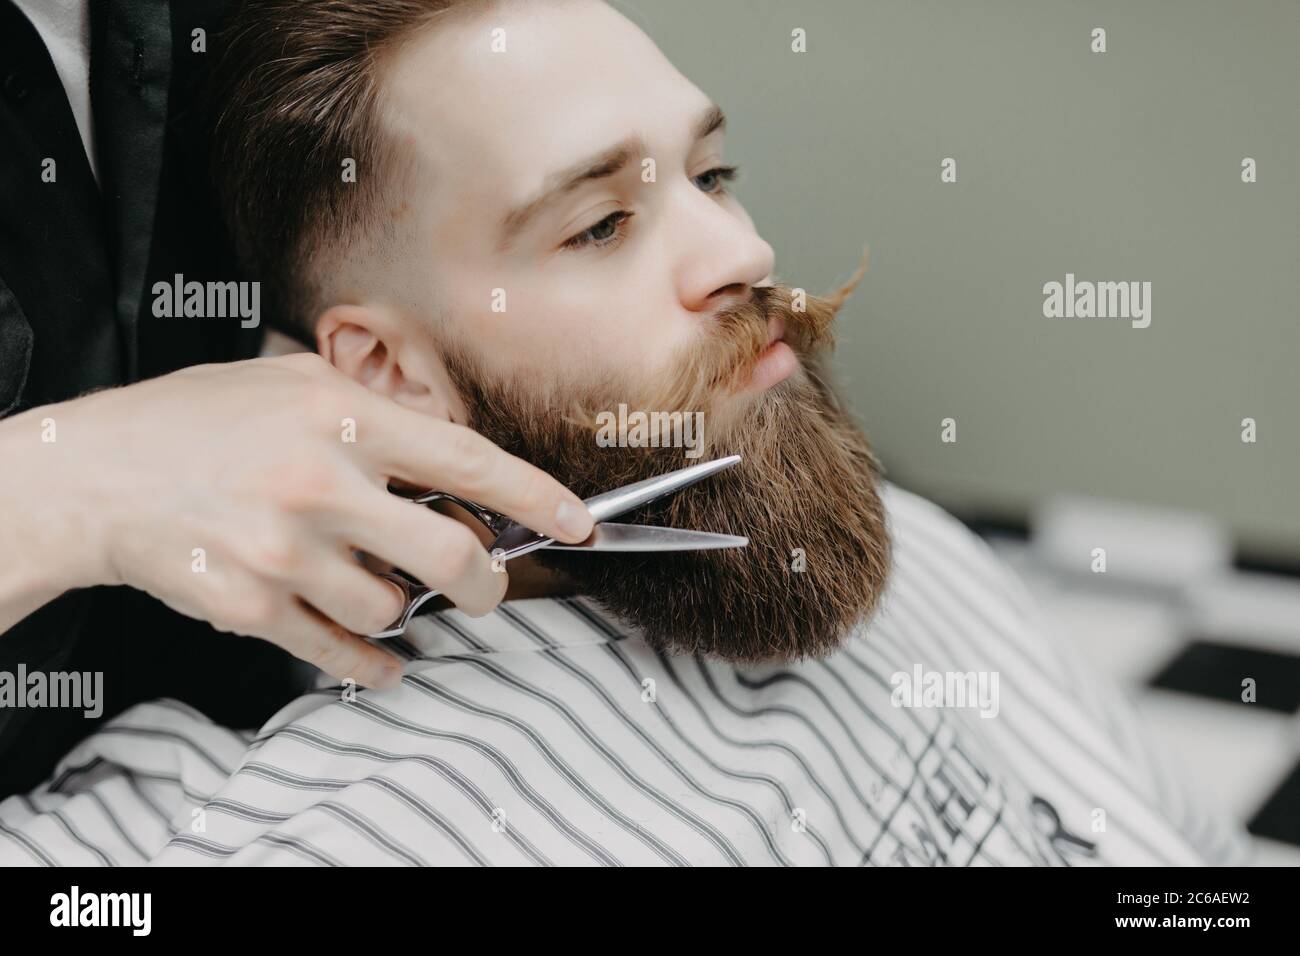 Beard styling and cut. 